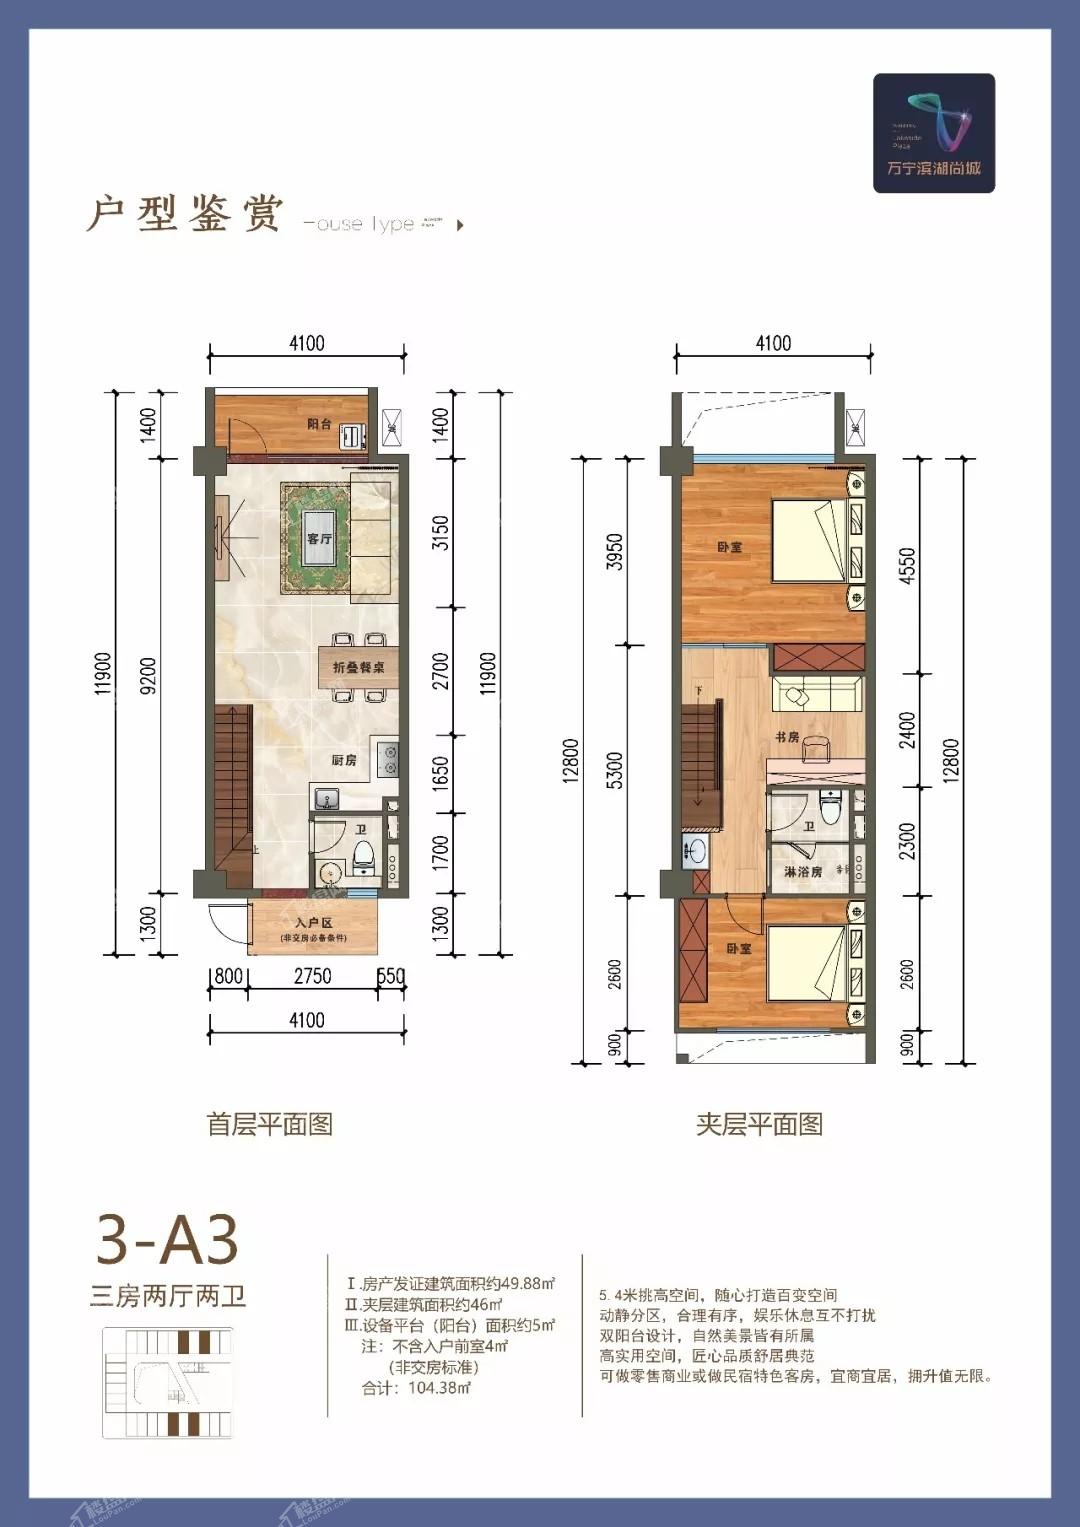 3-A3户型 三房两厅两卫 49.88平方米